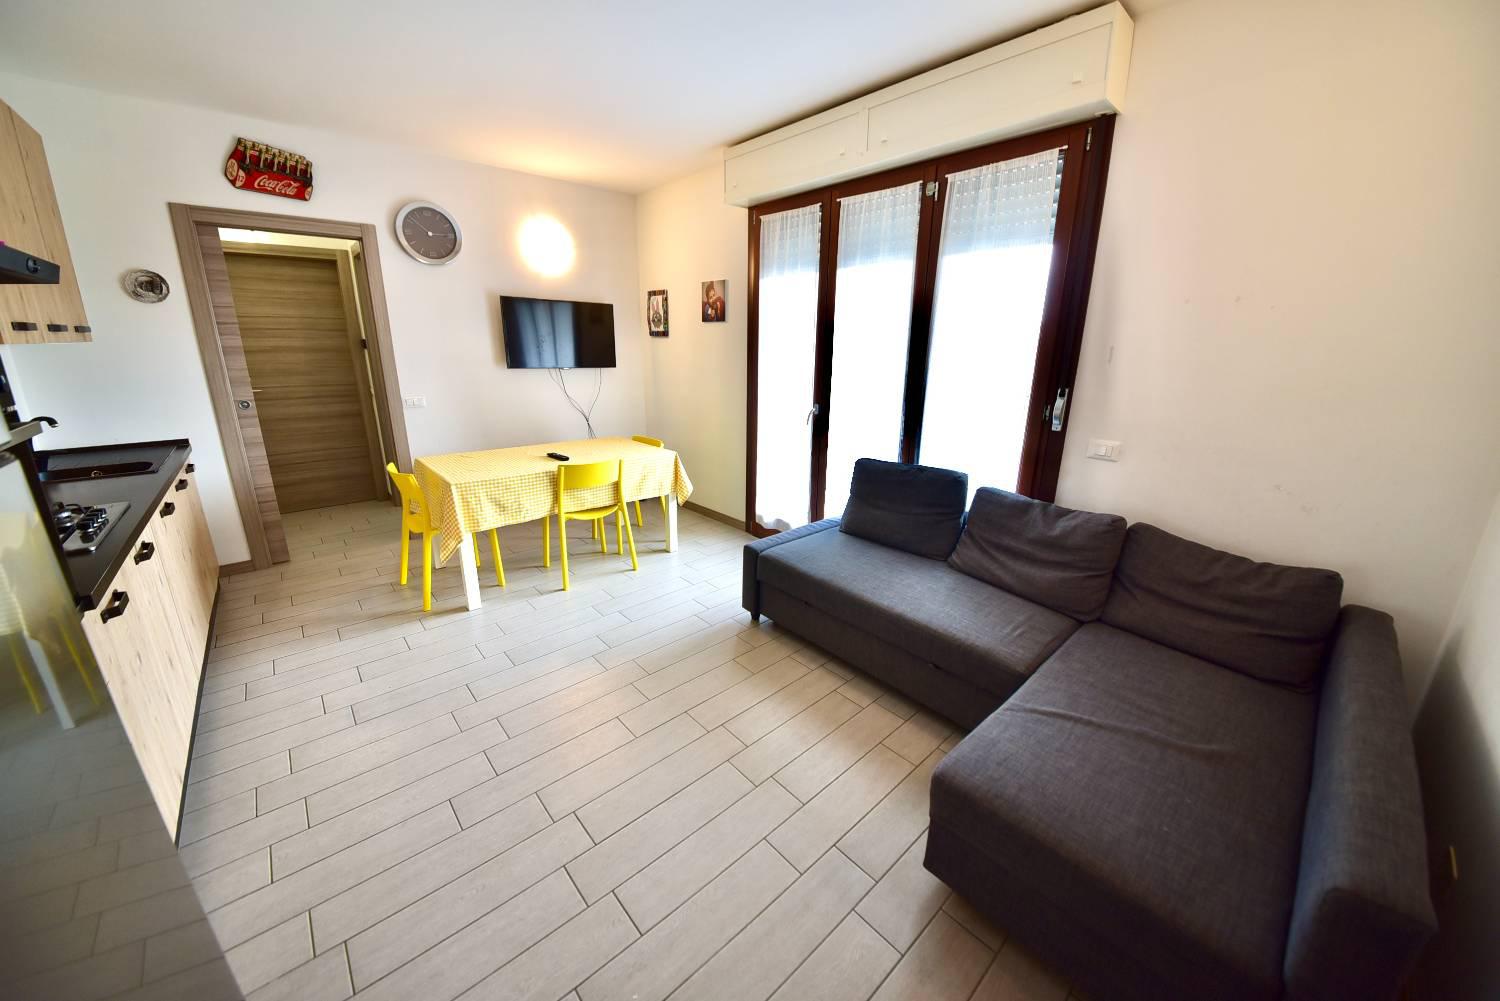 Appartamento in vendita a Pozzo d'Adda, 2 locali, prezzo € 110.000 | PortaleAgenzieImmobiliari.it